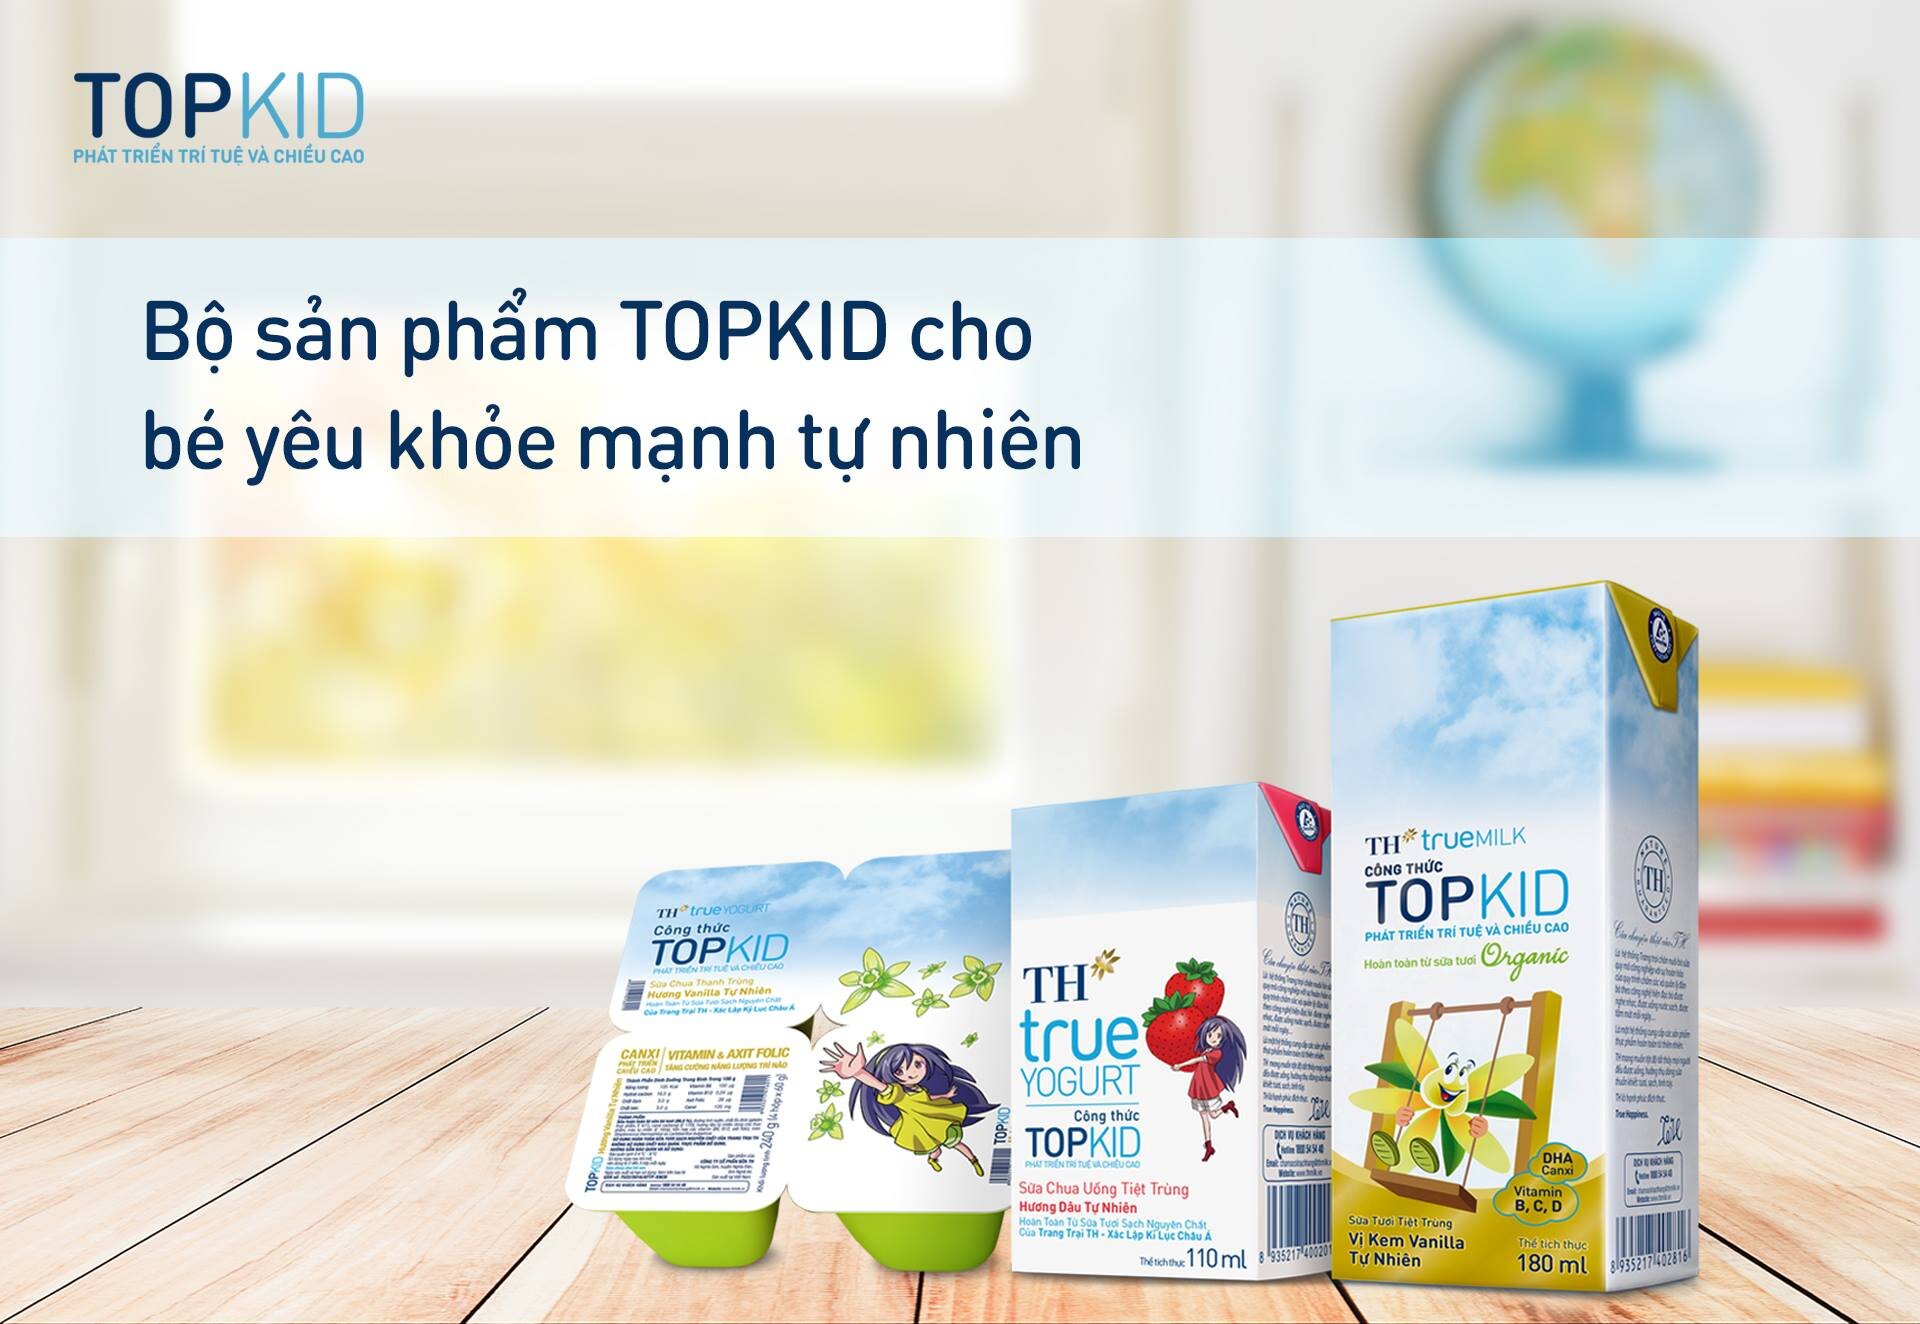 Topkid được sản xuất riêng cho trẻ nhỏ với công thức và hương vị khác biệt